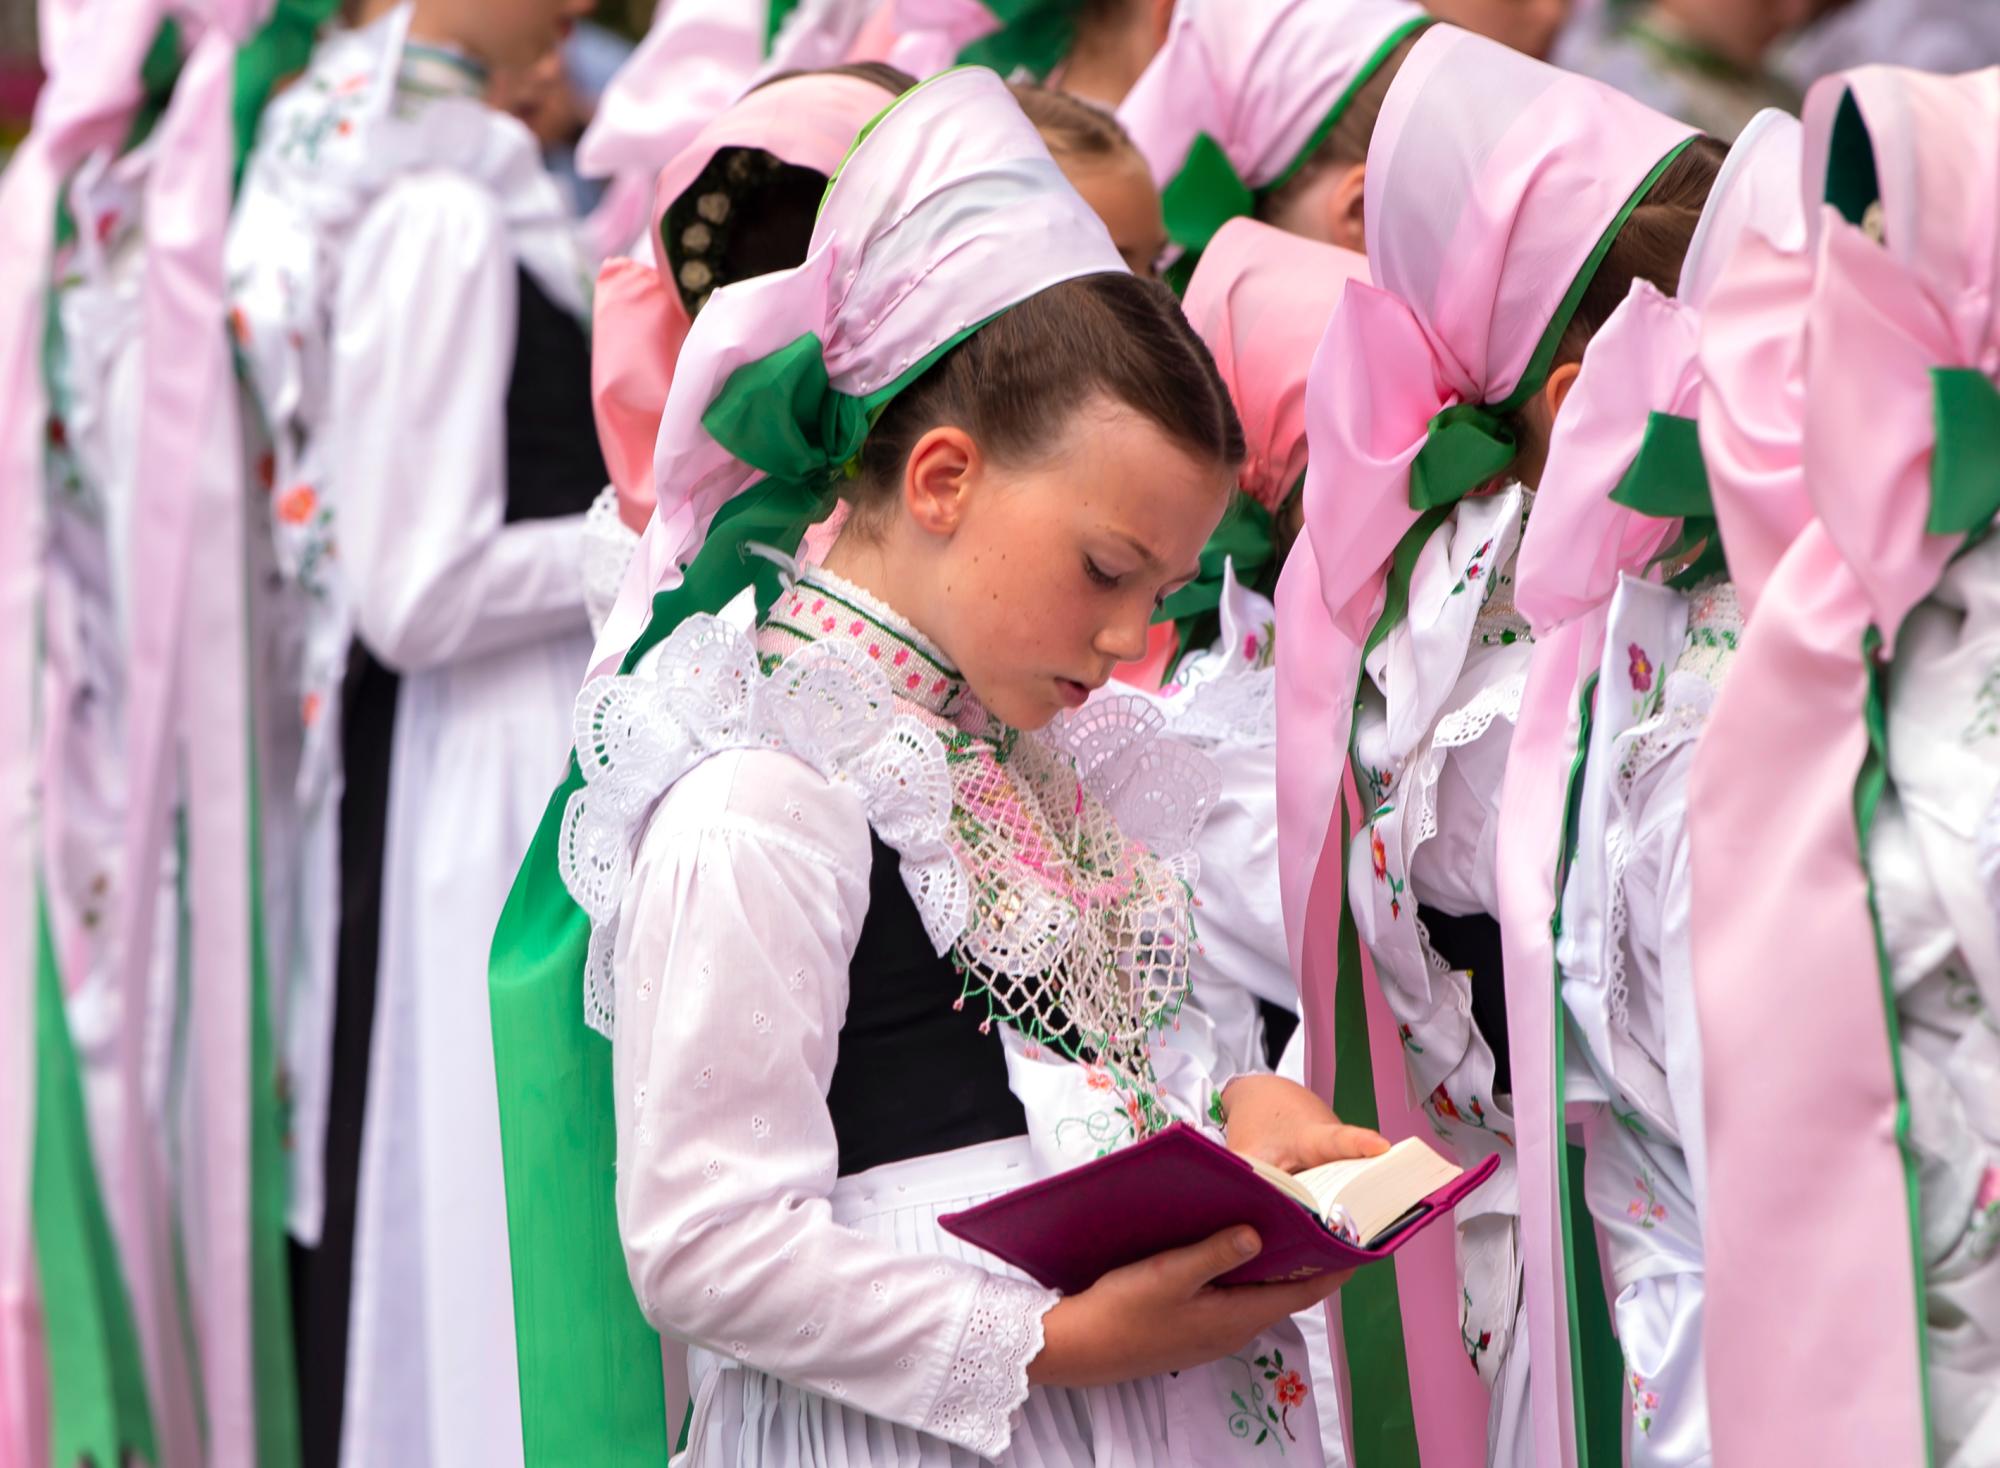 Los niños vestidos con la ropa tradicional asisten a una procesión del Corpus Christi en Crostwitz, Alemania, el jueves 20 de junio de 2019.